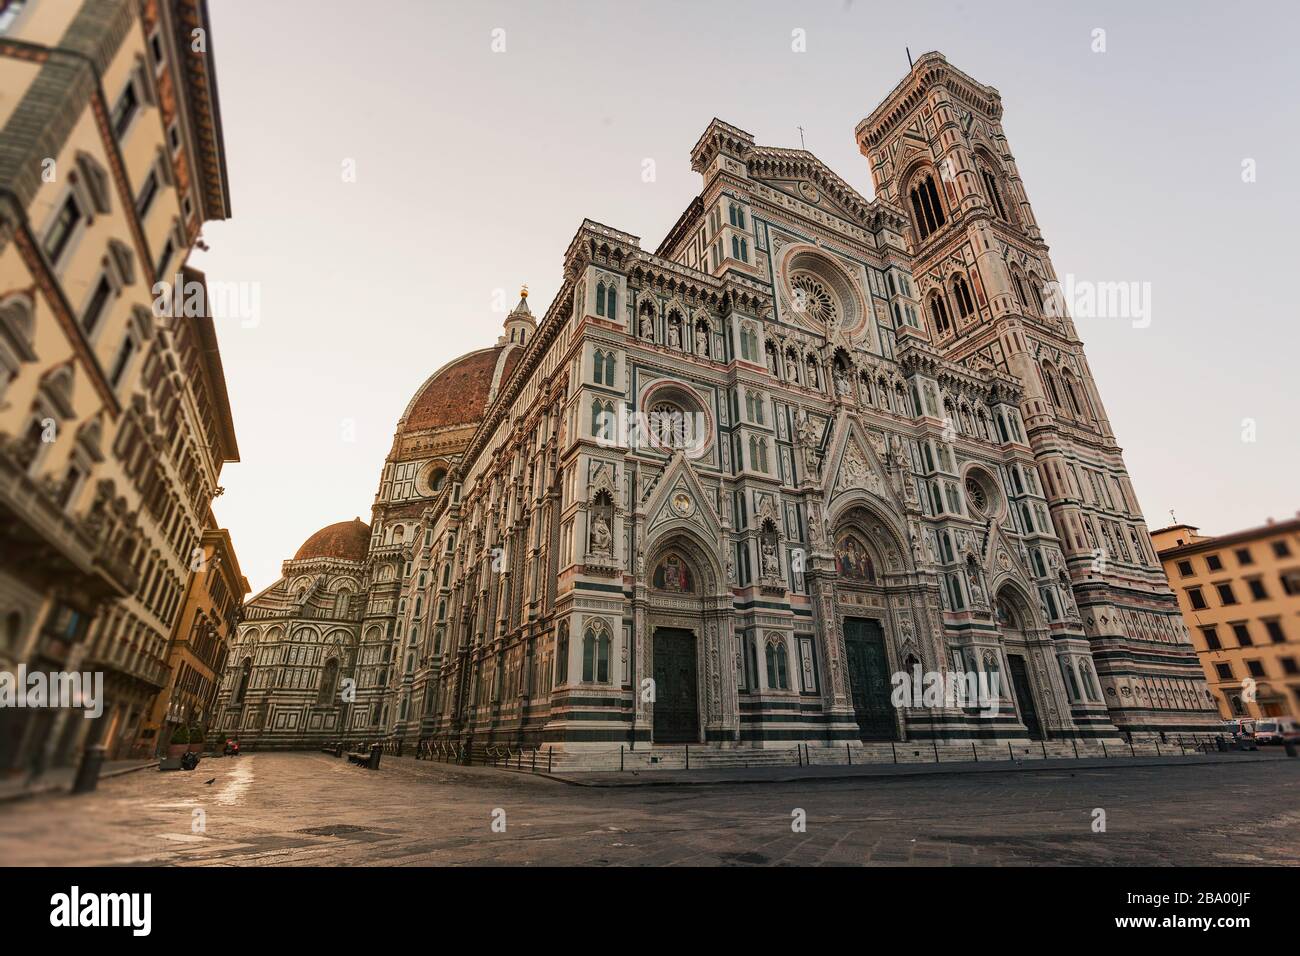 Duomo, Cattedrale di Firenze, Cattedrale di Santa Maria del Fiore, architettura rinascimentale italiana Foto Stock